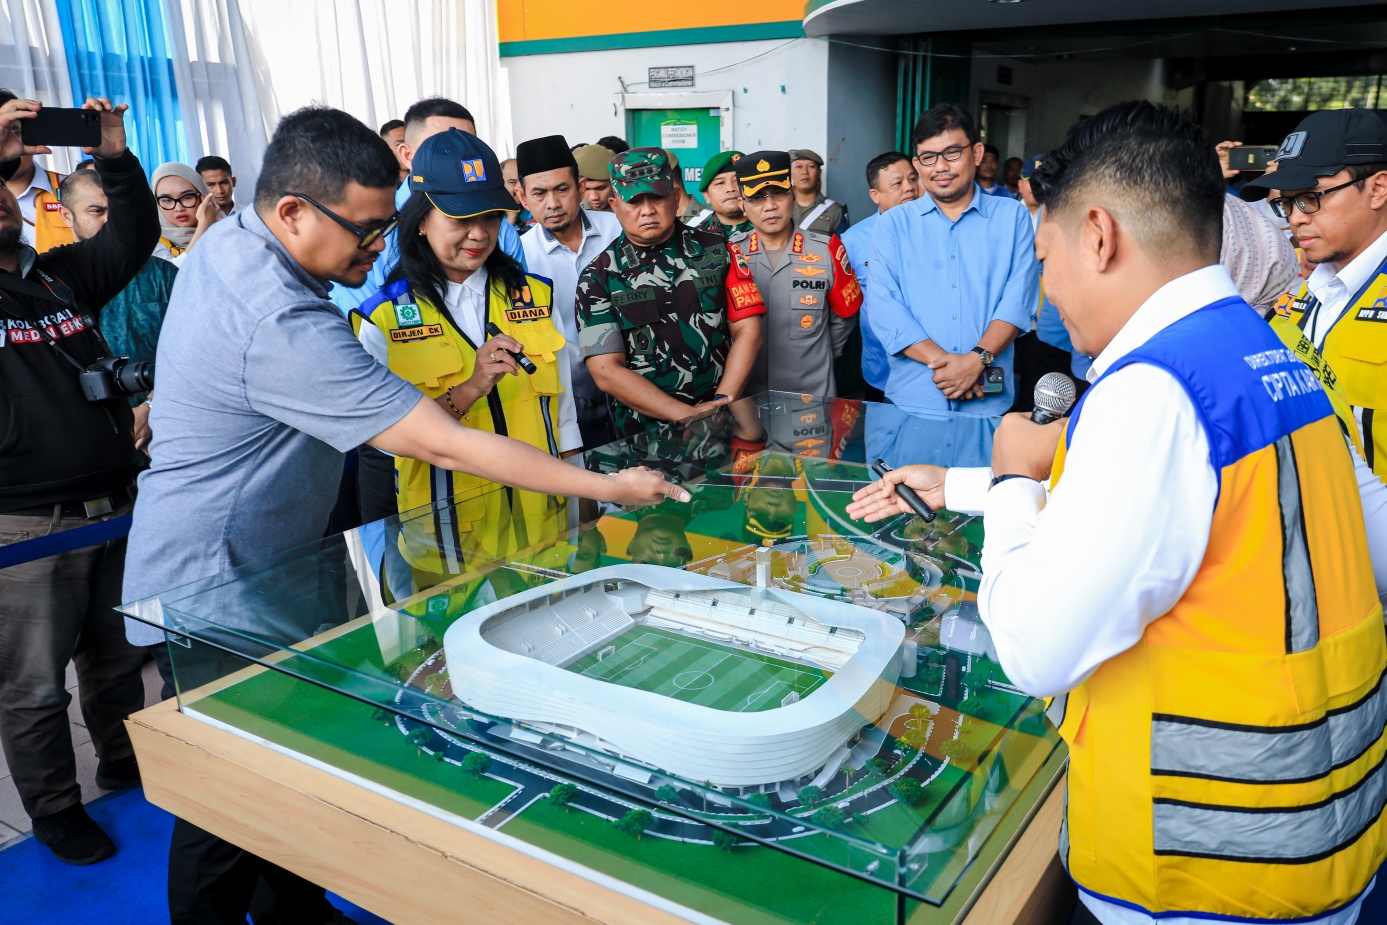 Pekerjaan Fisik Sarana dan Prasarana serta Rehabilitasi Stadion Teladan Dimulai, Bobby Nasution harapkan Stadion yang dibangun Bertaraf Internasional ini berperan Wujudkan Indonesia Emas 2045